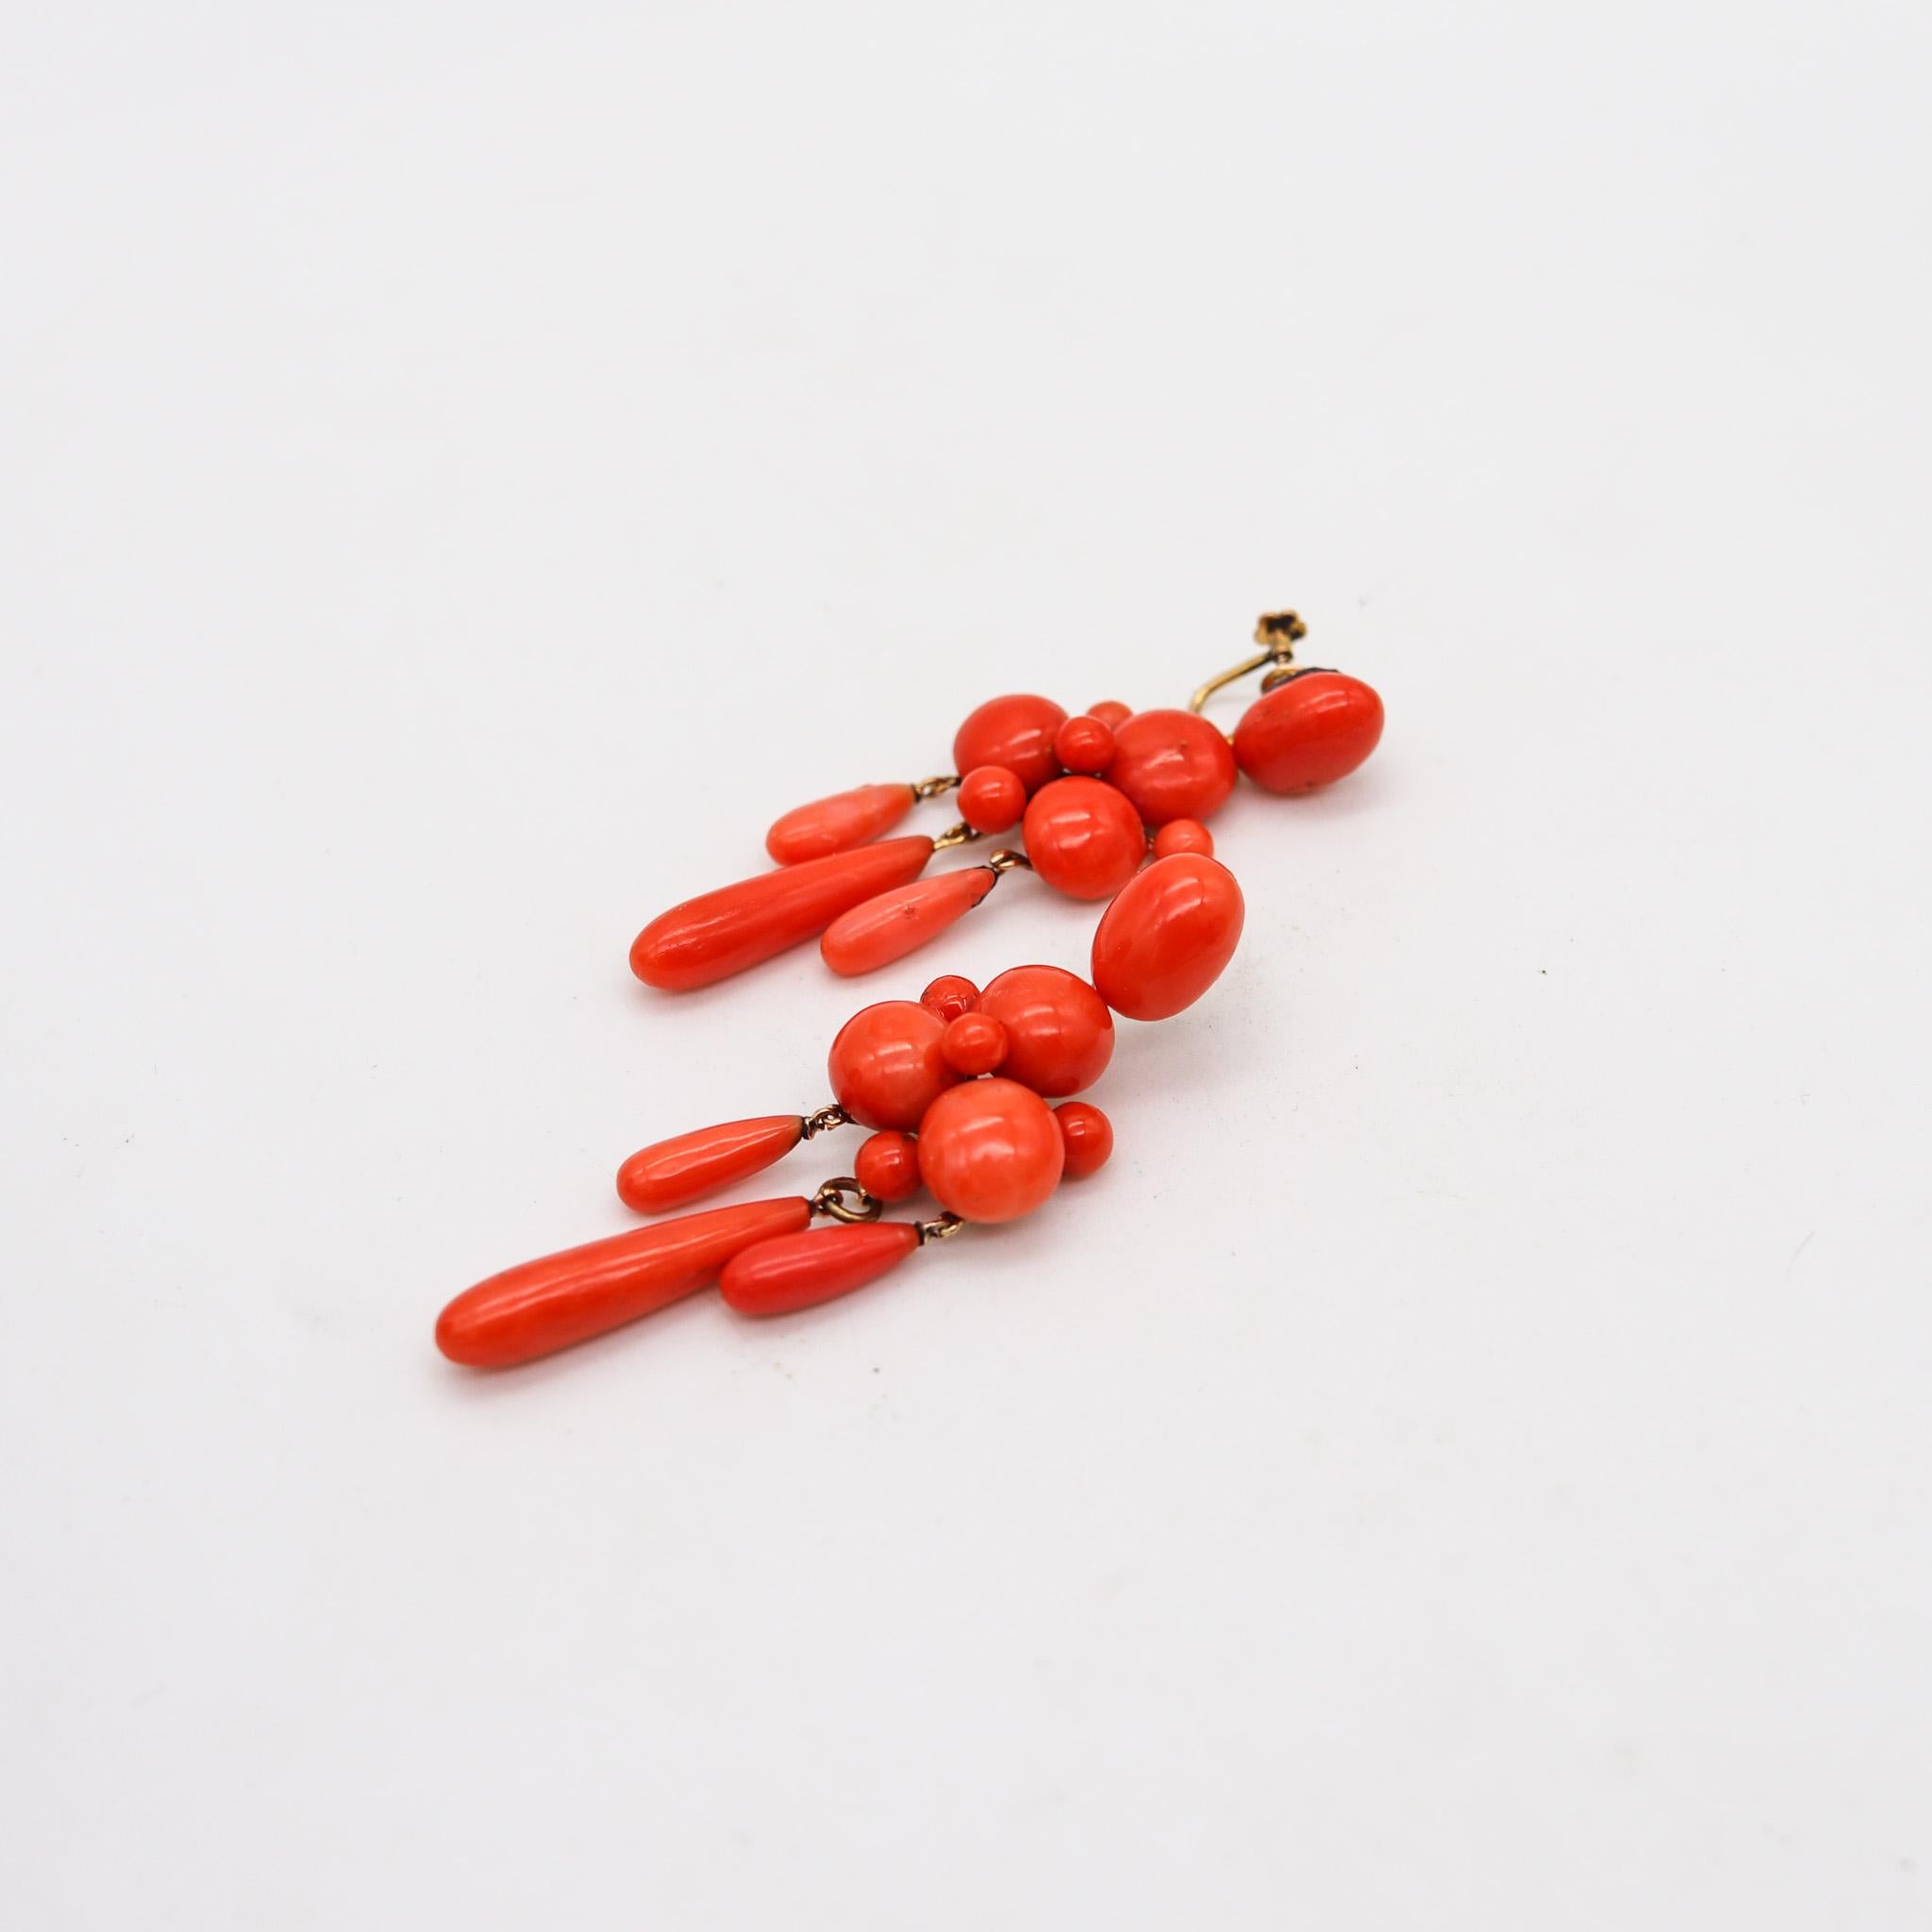 Paire de boucles d'oreilles pendantes de style victorien avec du corail napolitain.

Magnifiques boucles d'oreilles pendantes anciennes avec des coraux rouges, créées à Naples en Italie pendant la période victorienne, dans les années 1890. Cette